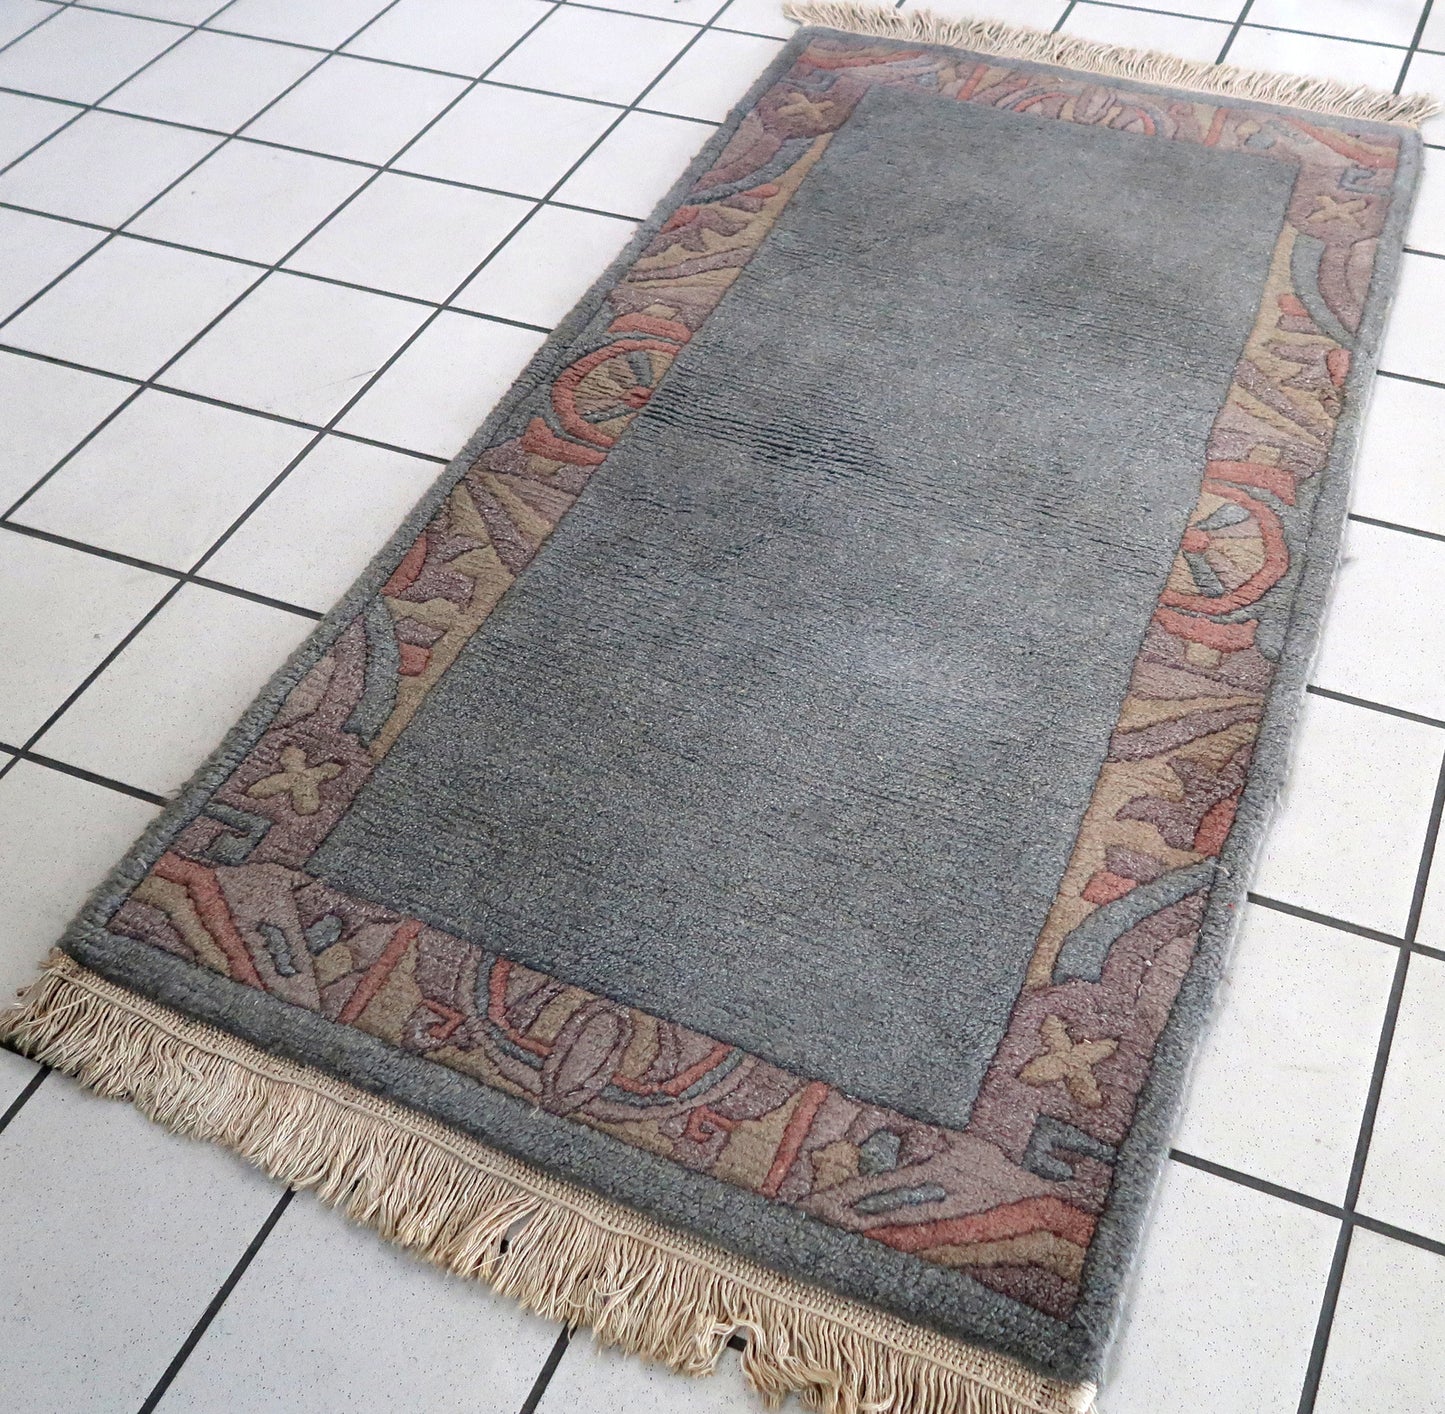 Handmade vintage Tibetan Khaden rug 2.4' x 4.4' (75cm x 136cm) 1970s - 1C822